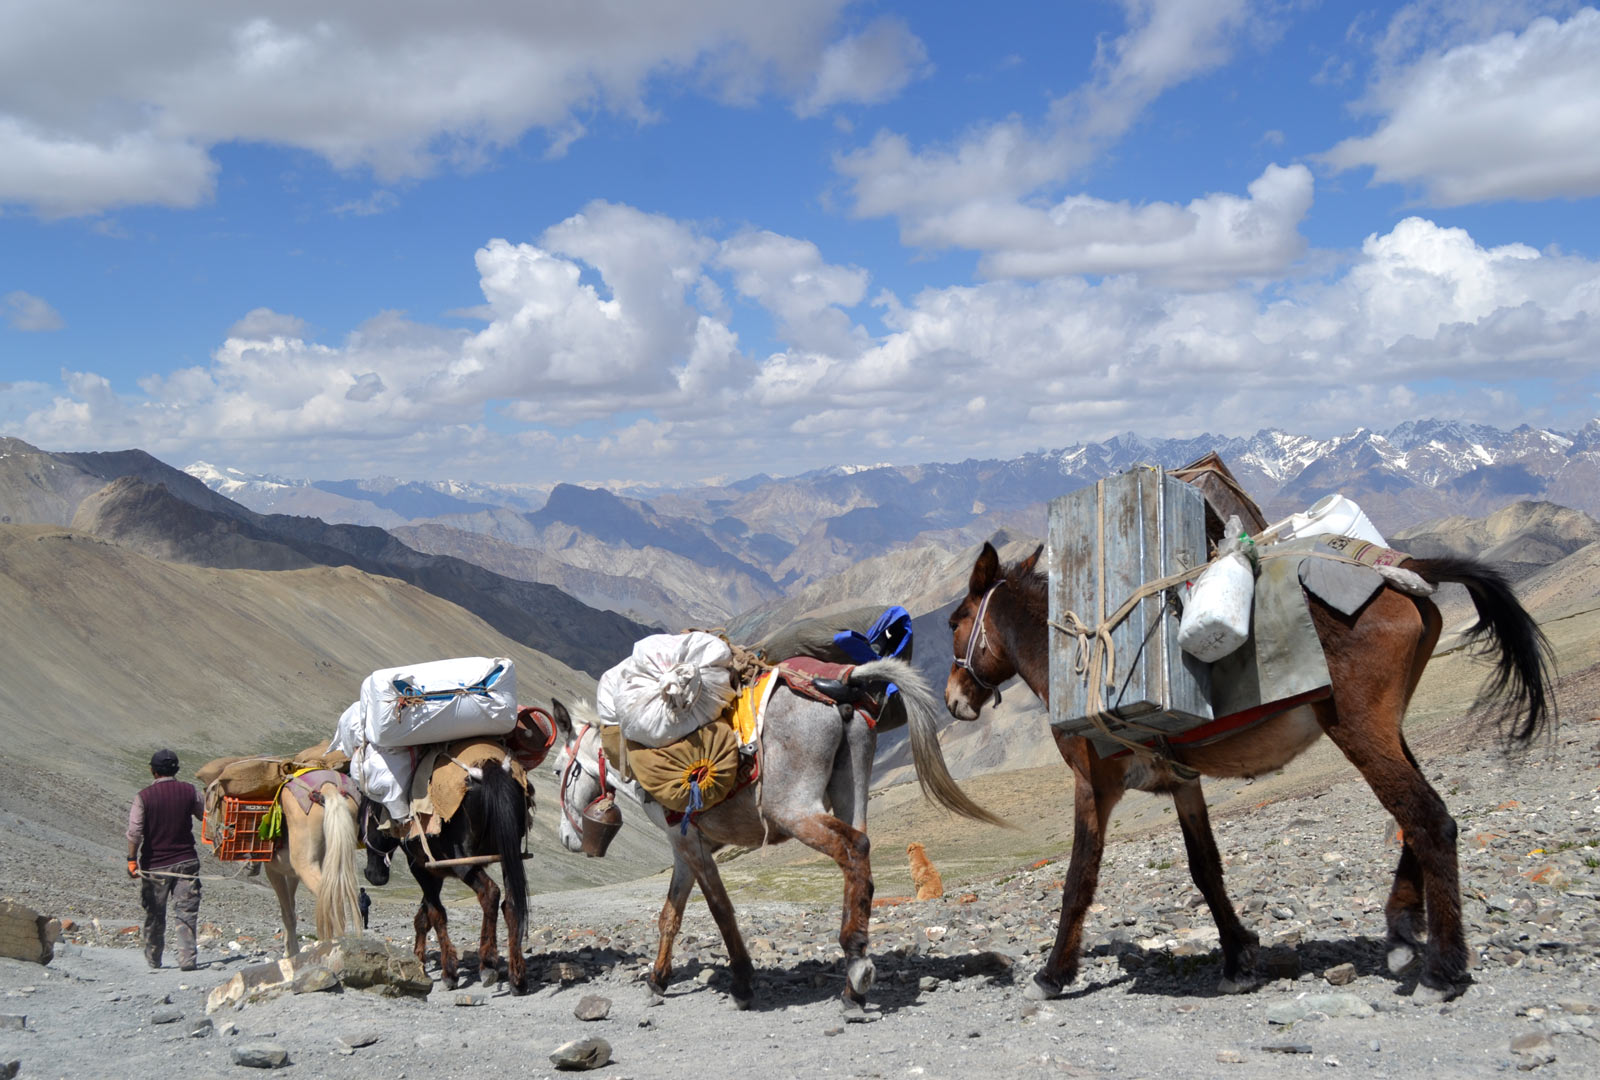 Mountain Pass in Ladakh, India